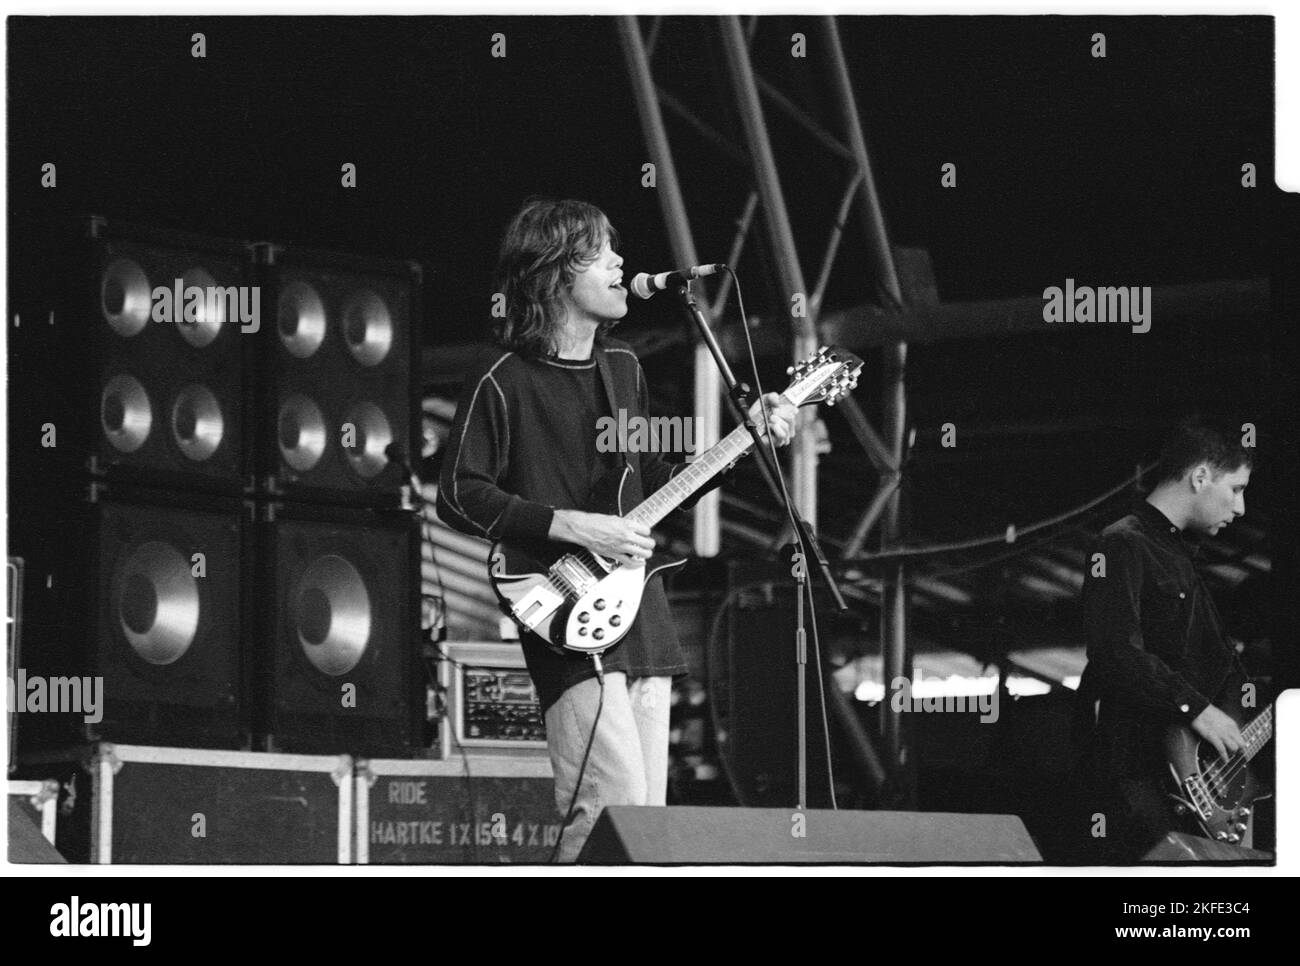 Mark Gardener del gruppo britannico Indie Ride giocando al Main Stage a Glastonbury, sabato 25 giugno 1994. Non c'era alcuna fase piramidale quell'anno dopo un incendio. Fotografia © Rob Watkins Foto Stock